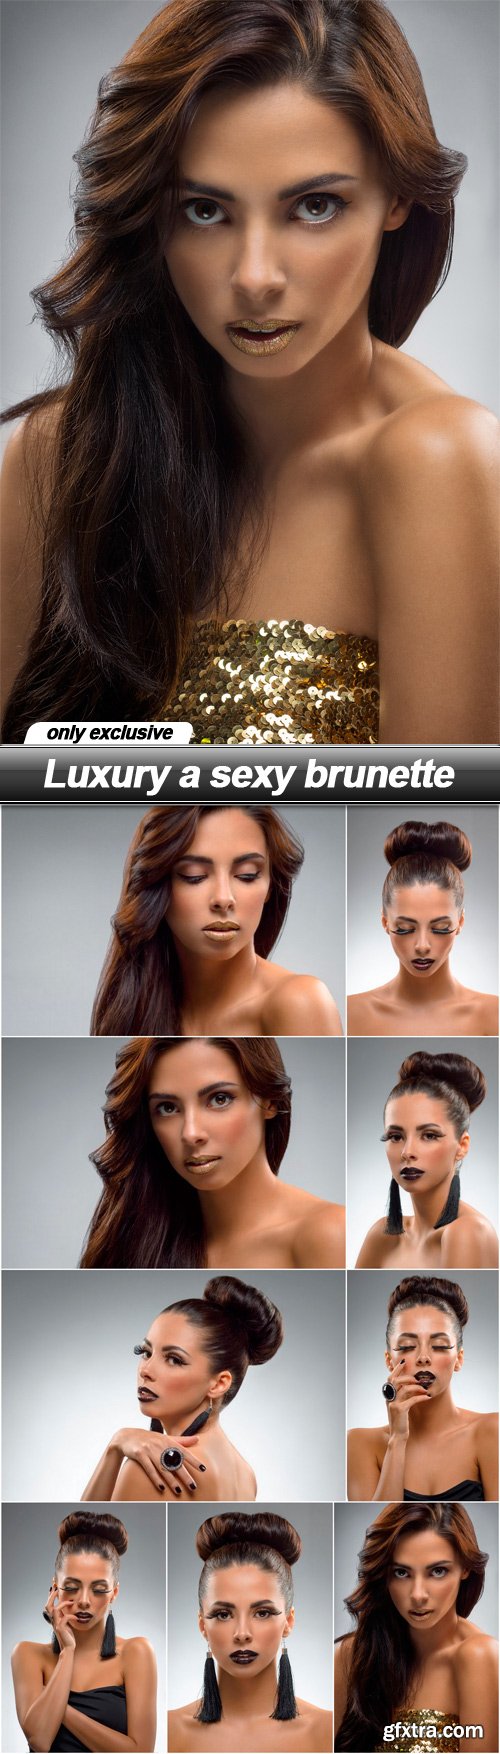 Luxury a sexy brunette - 9 UHQ JPEG